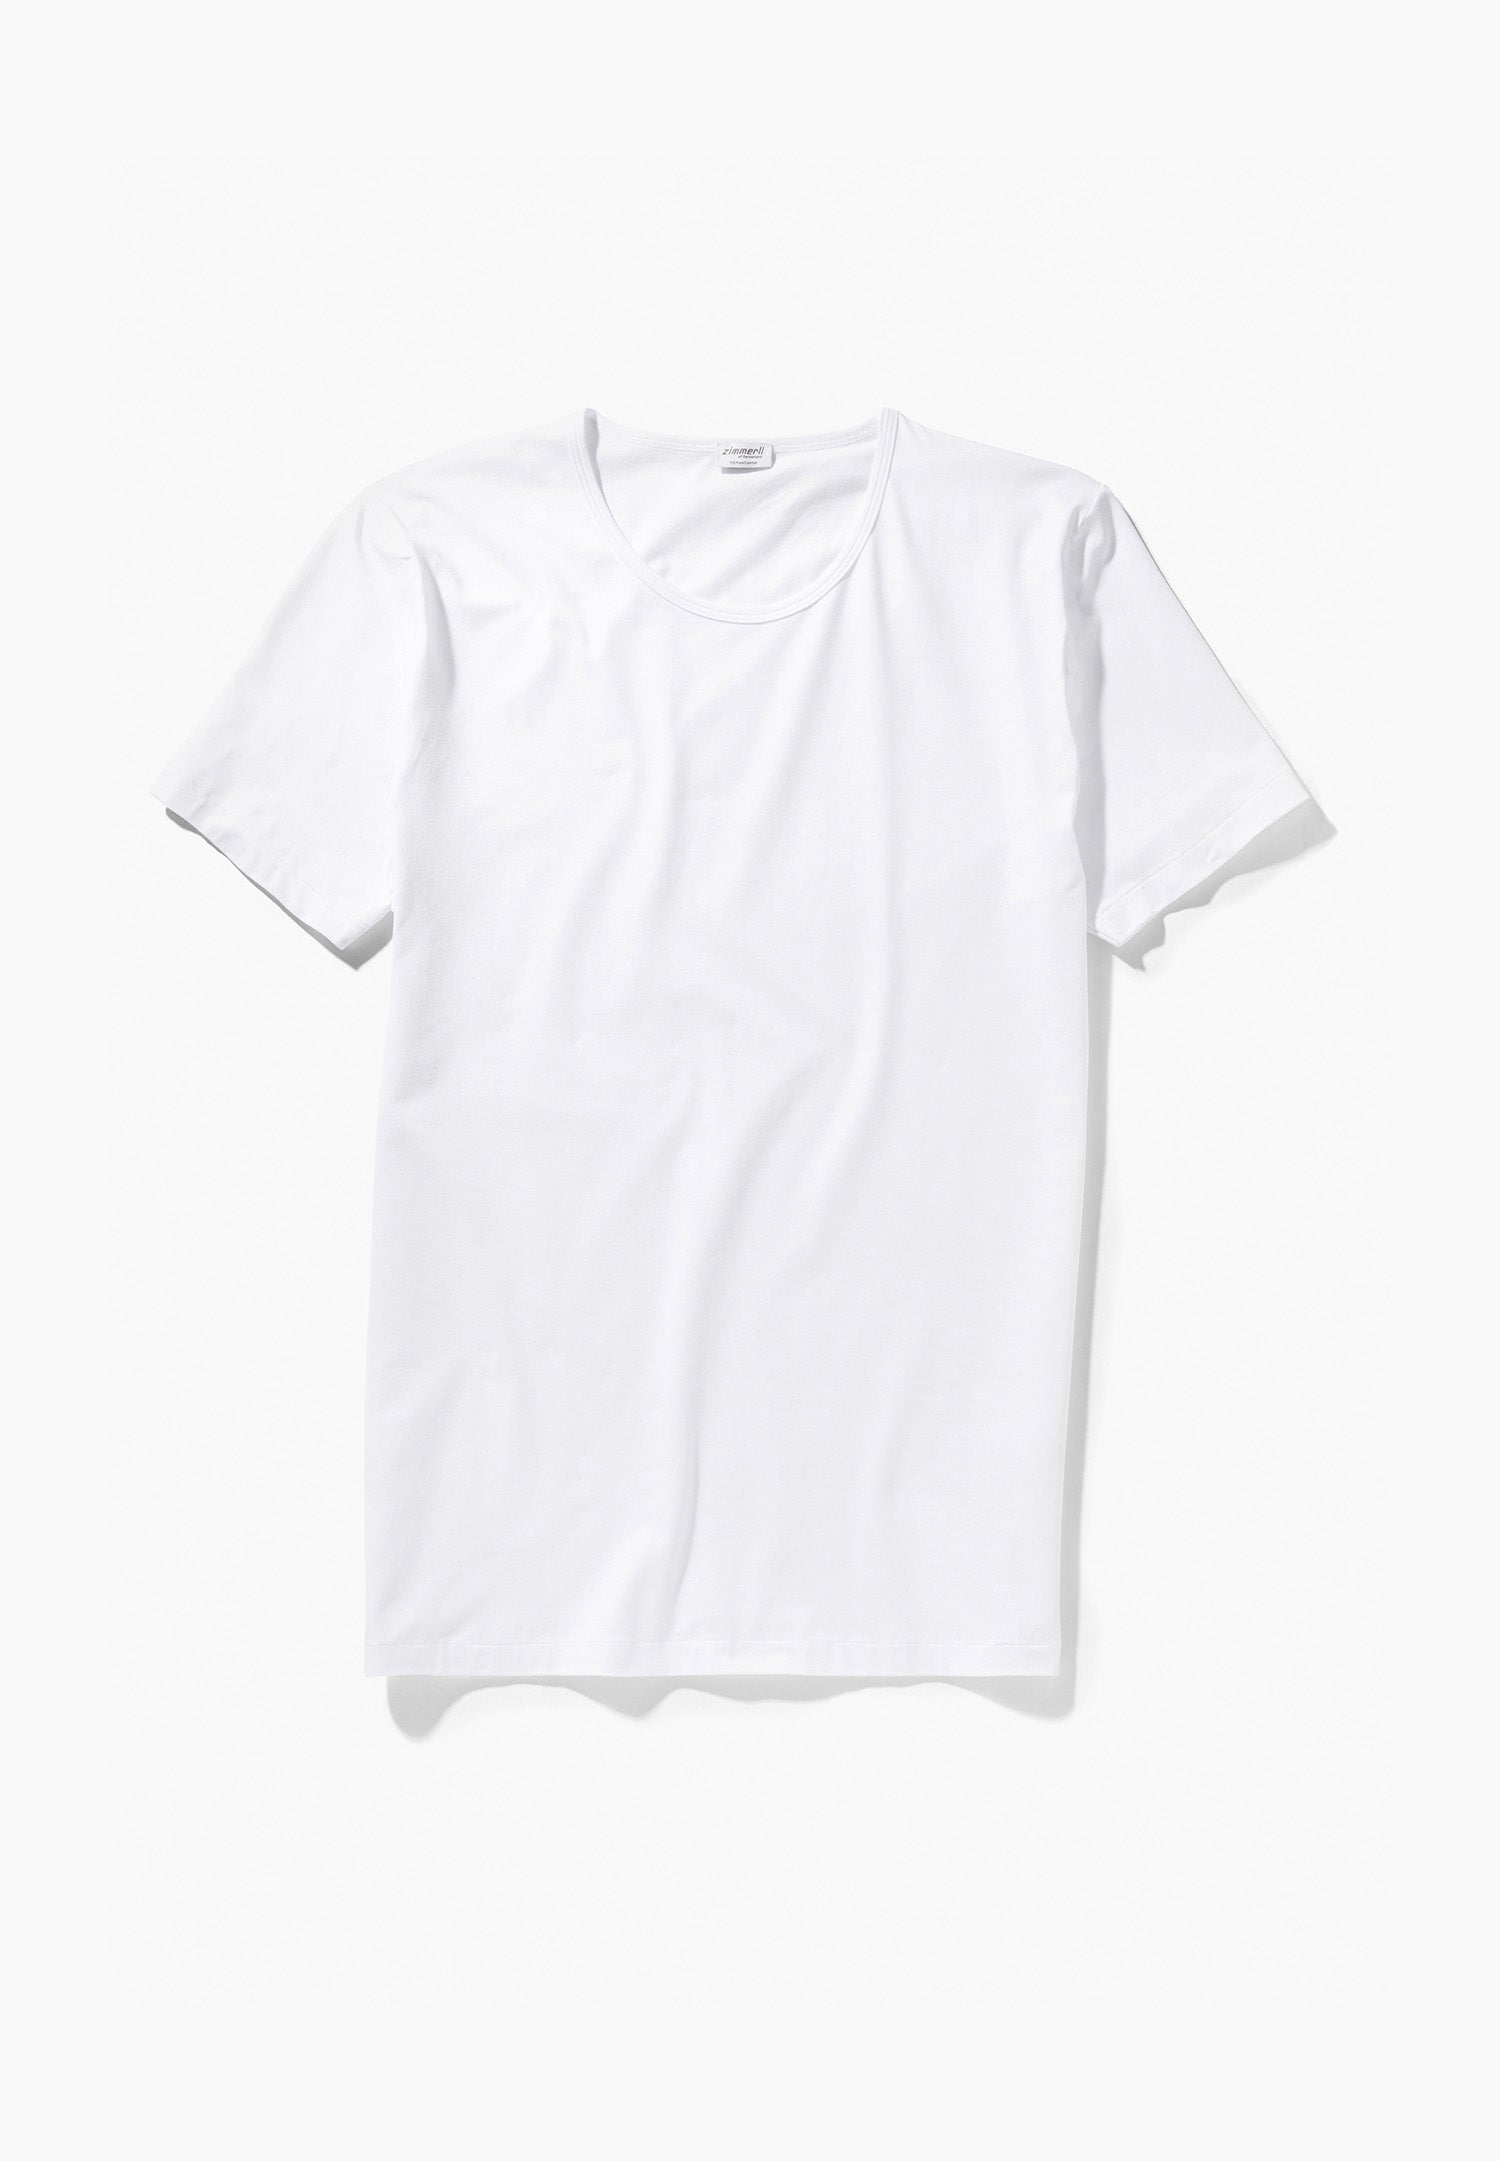 Pure Comfort | T-Shirt Short Sleeve - white - Zimmerli of Switzerland ...